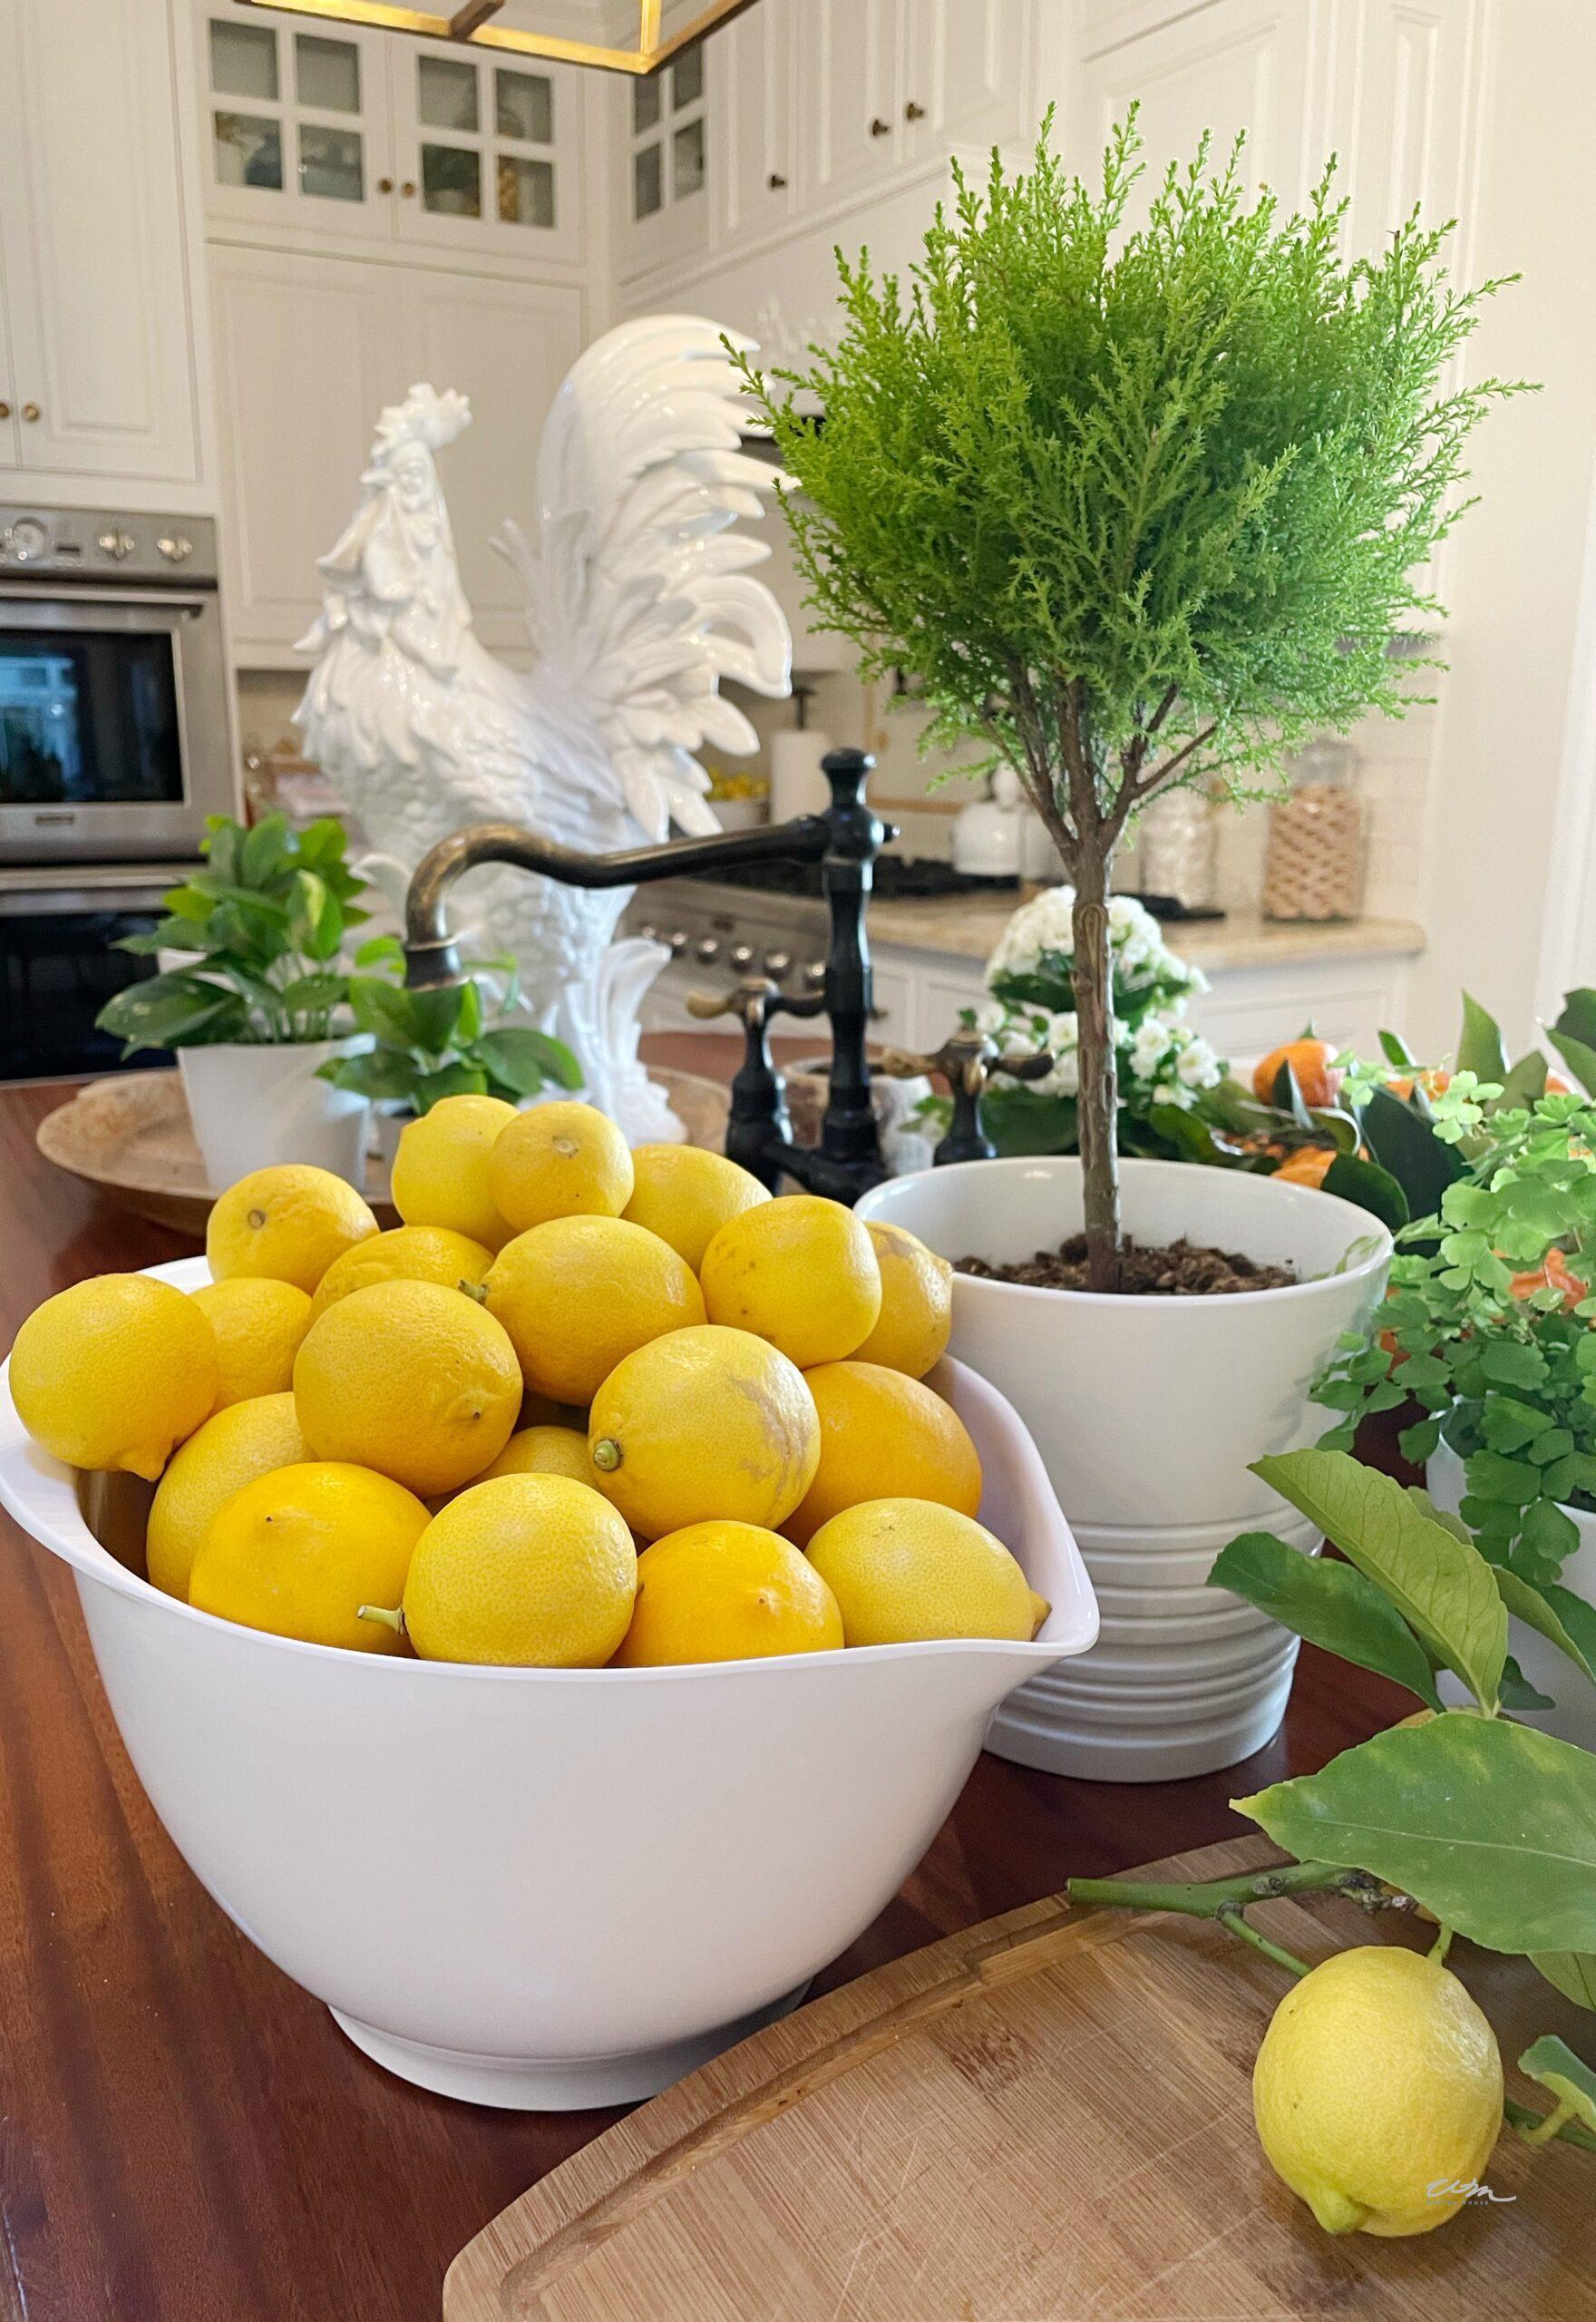 5 uses for lemons 